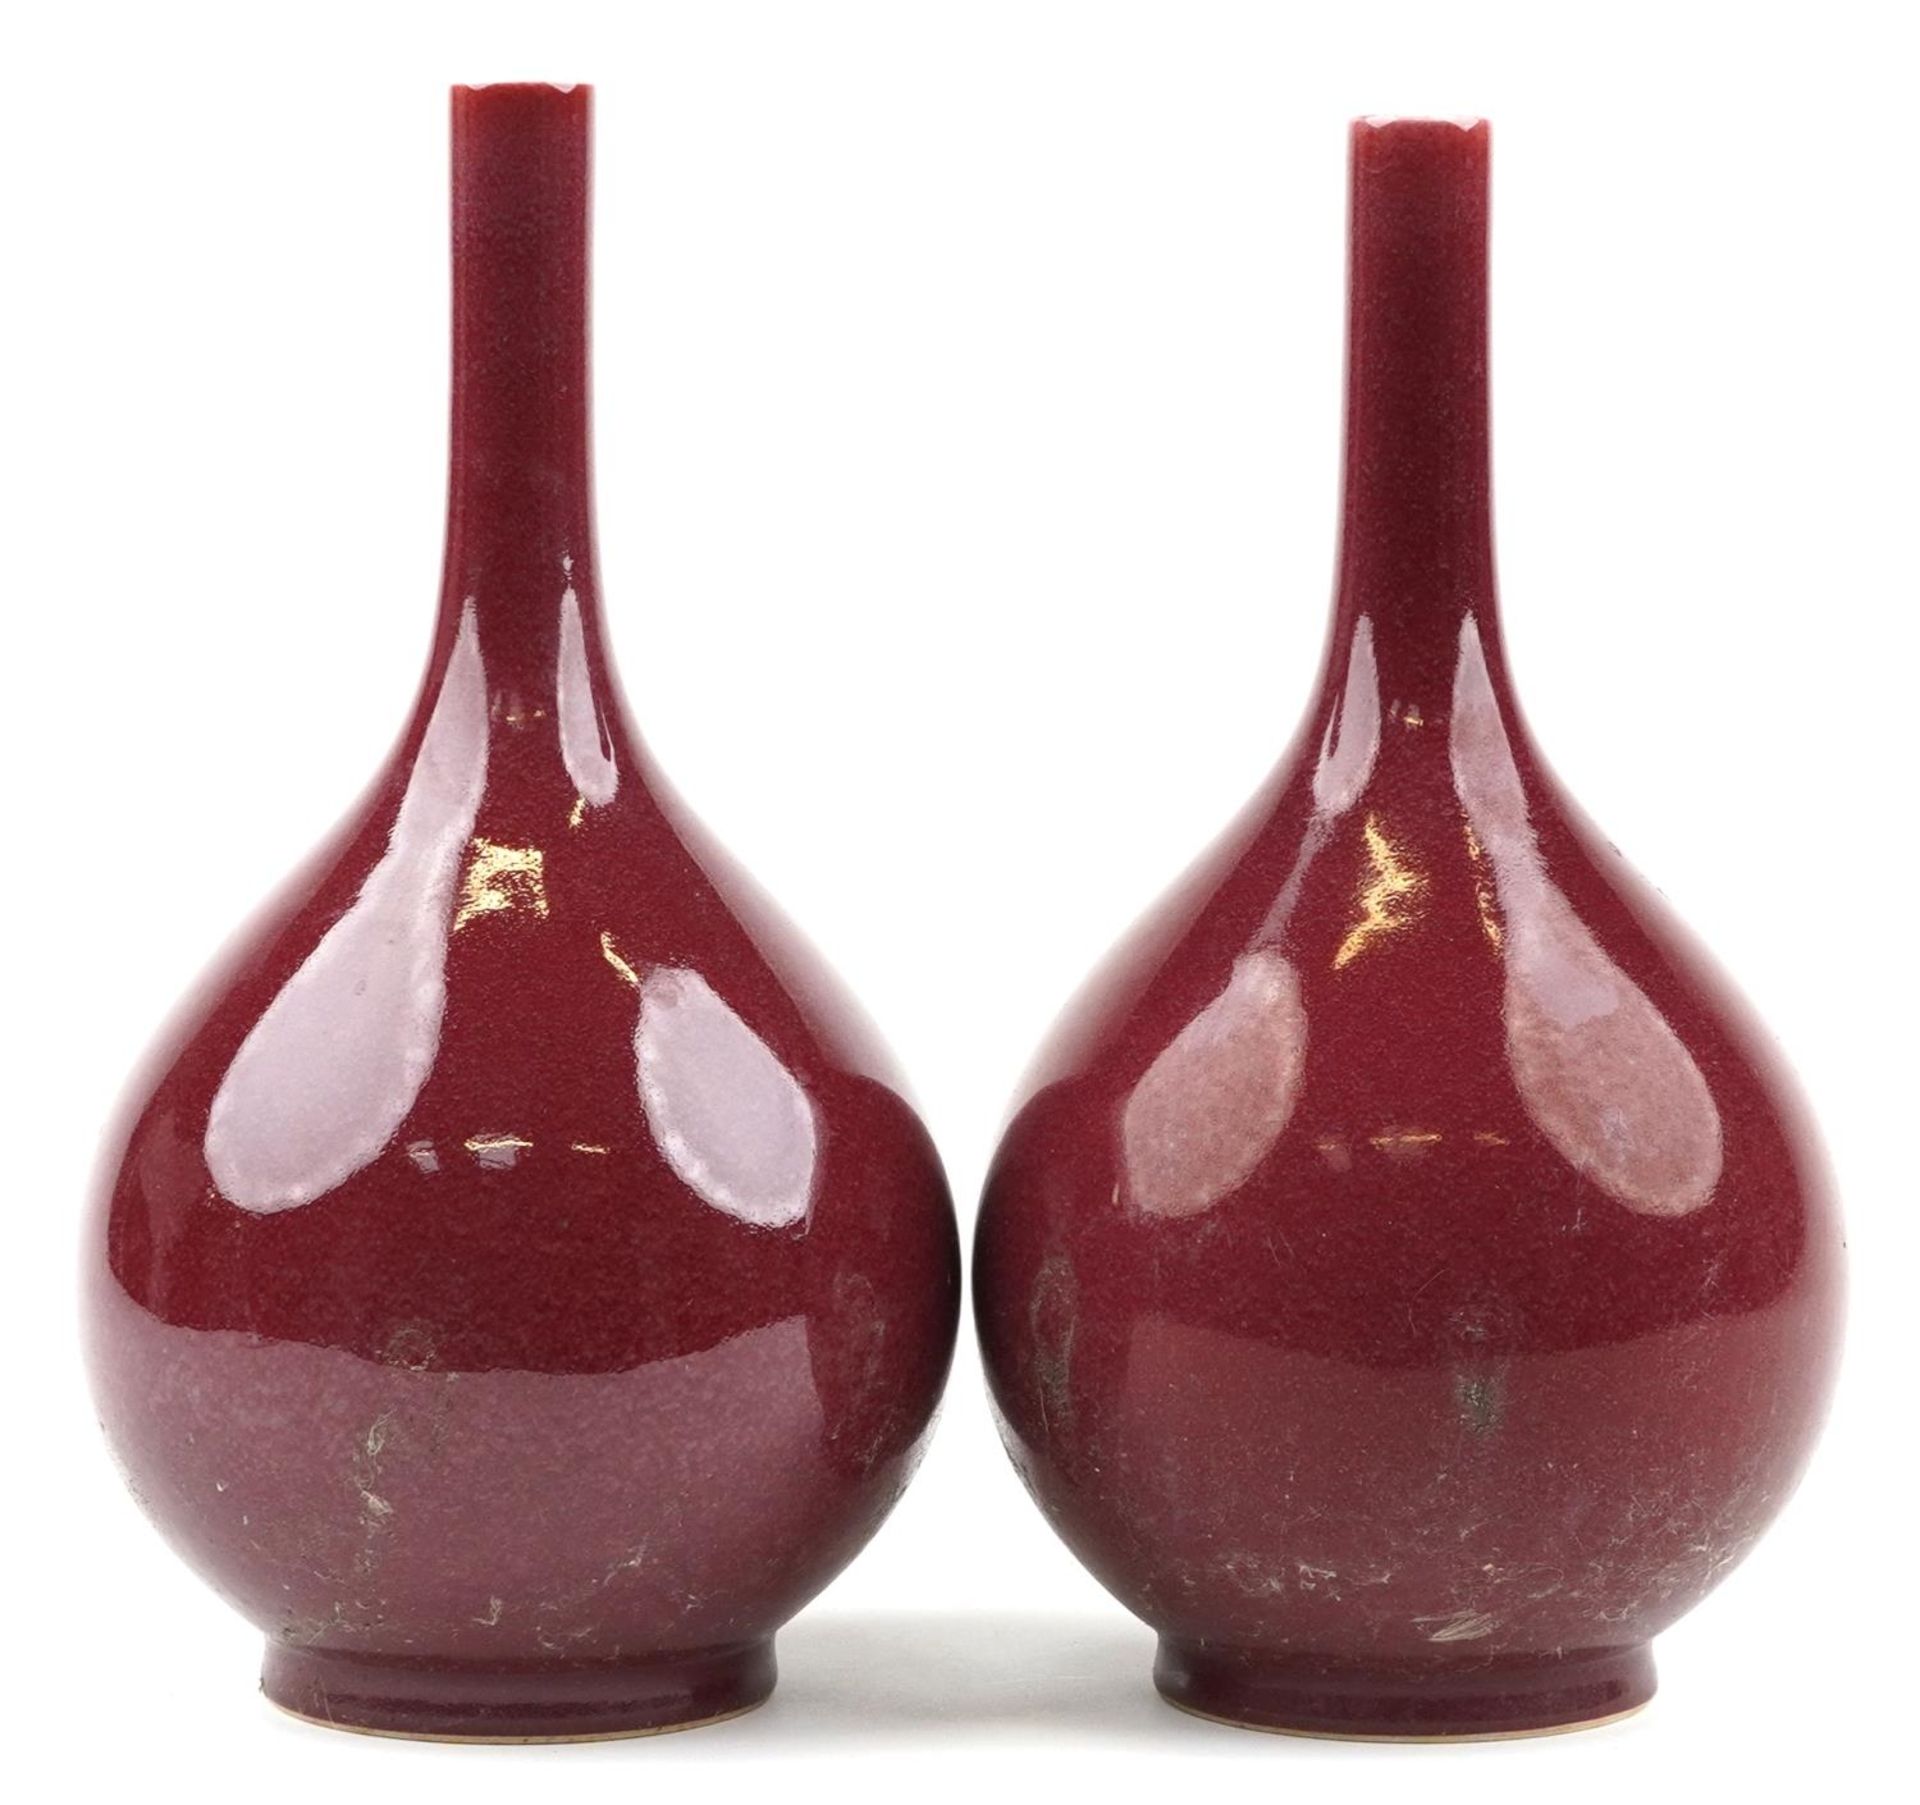 Pair of Chinese porcelain long neck bottle vases having sang de boeuf glazes, each 34cm high : For - Image 4 of 6